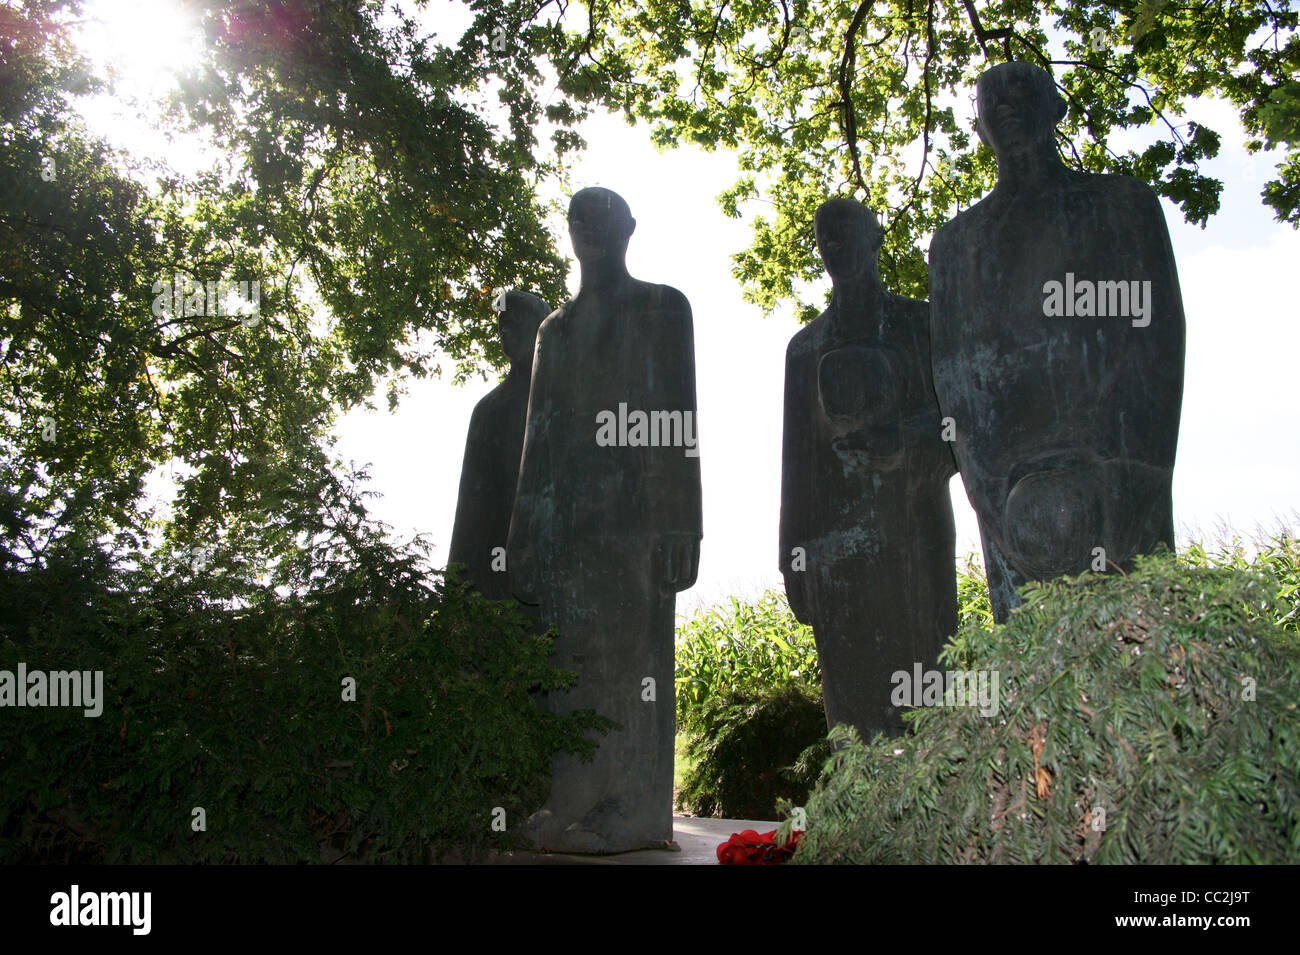 Des statues en bronze par Emil Krieger allemand de Langemark, cimetière militaire de la première guerre mondiale, Langemark-Poelkapelle Ieper, Ypres, Belgique Banque D'Images